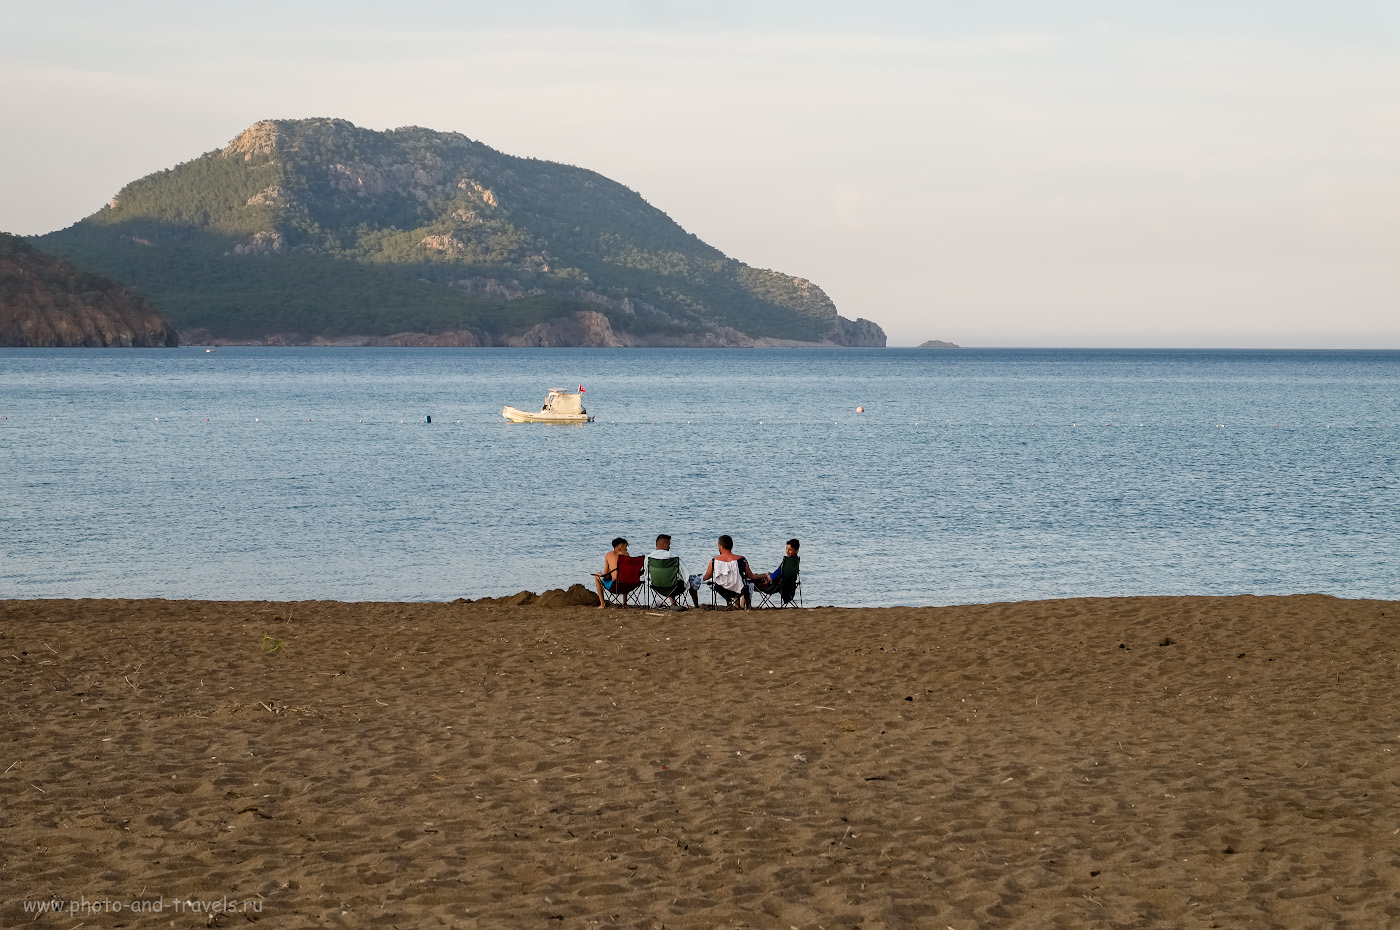 Фотография 19. Отдыхающие на пляже. Где лучший отдых в Турции. 1/170, 8.0, 200, -0.33, 55.